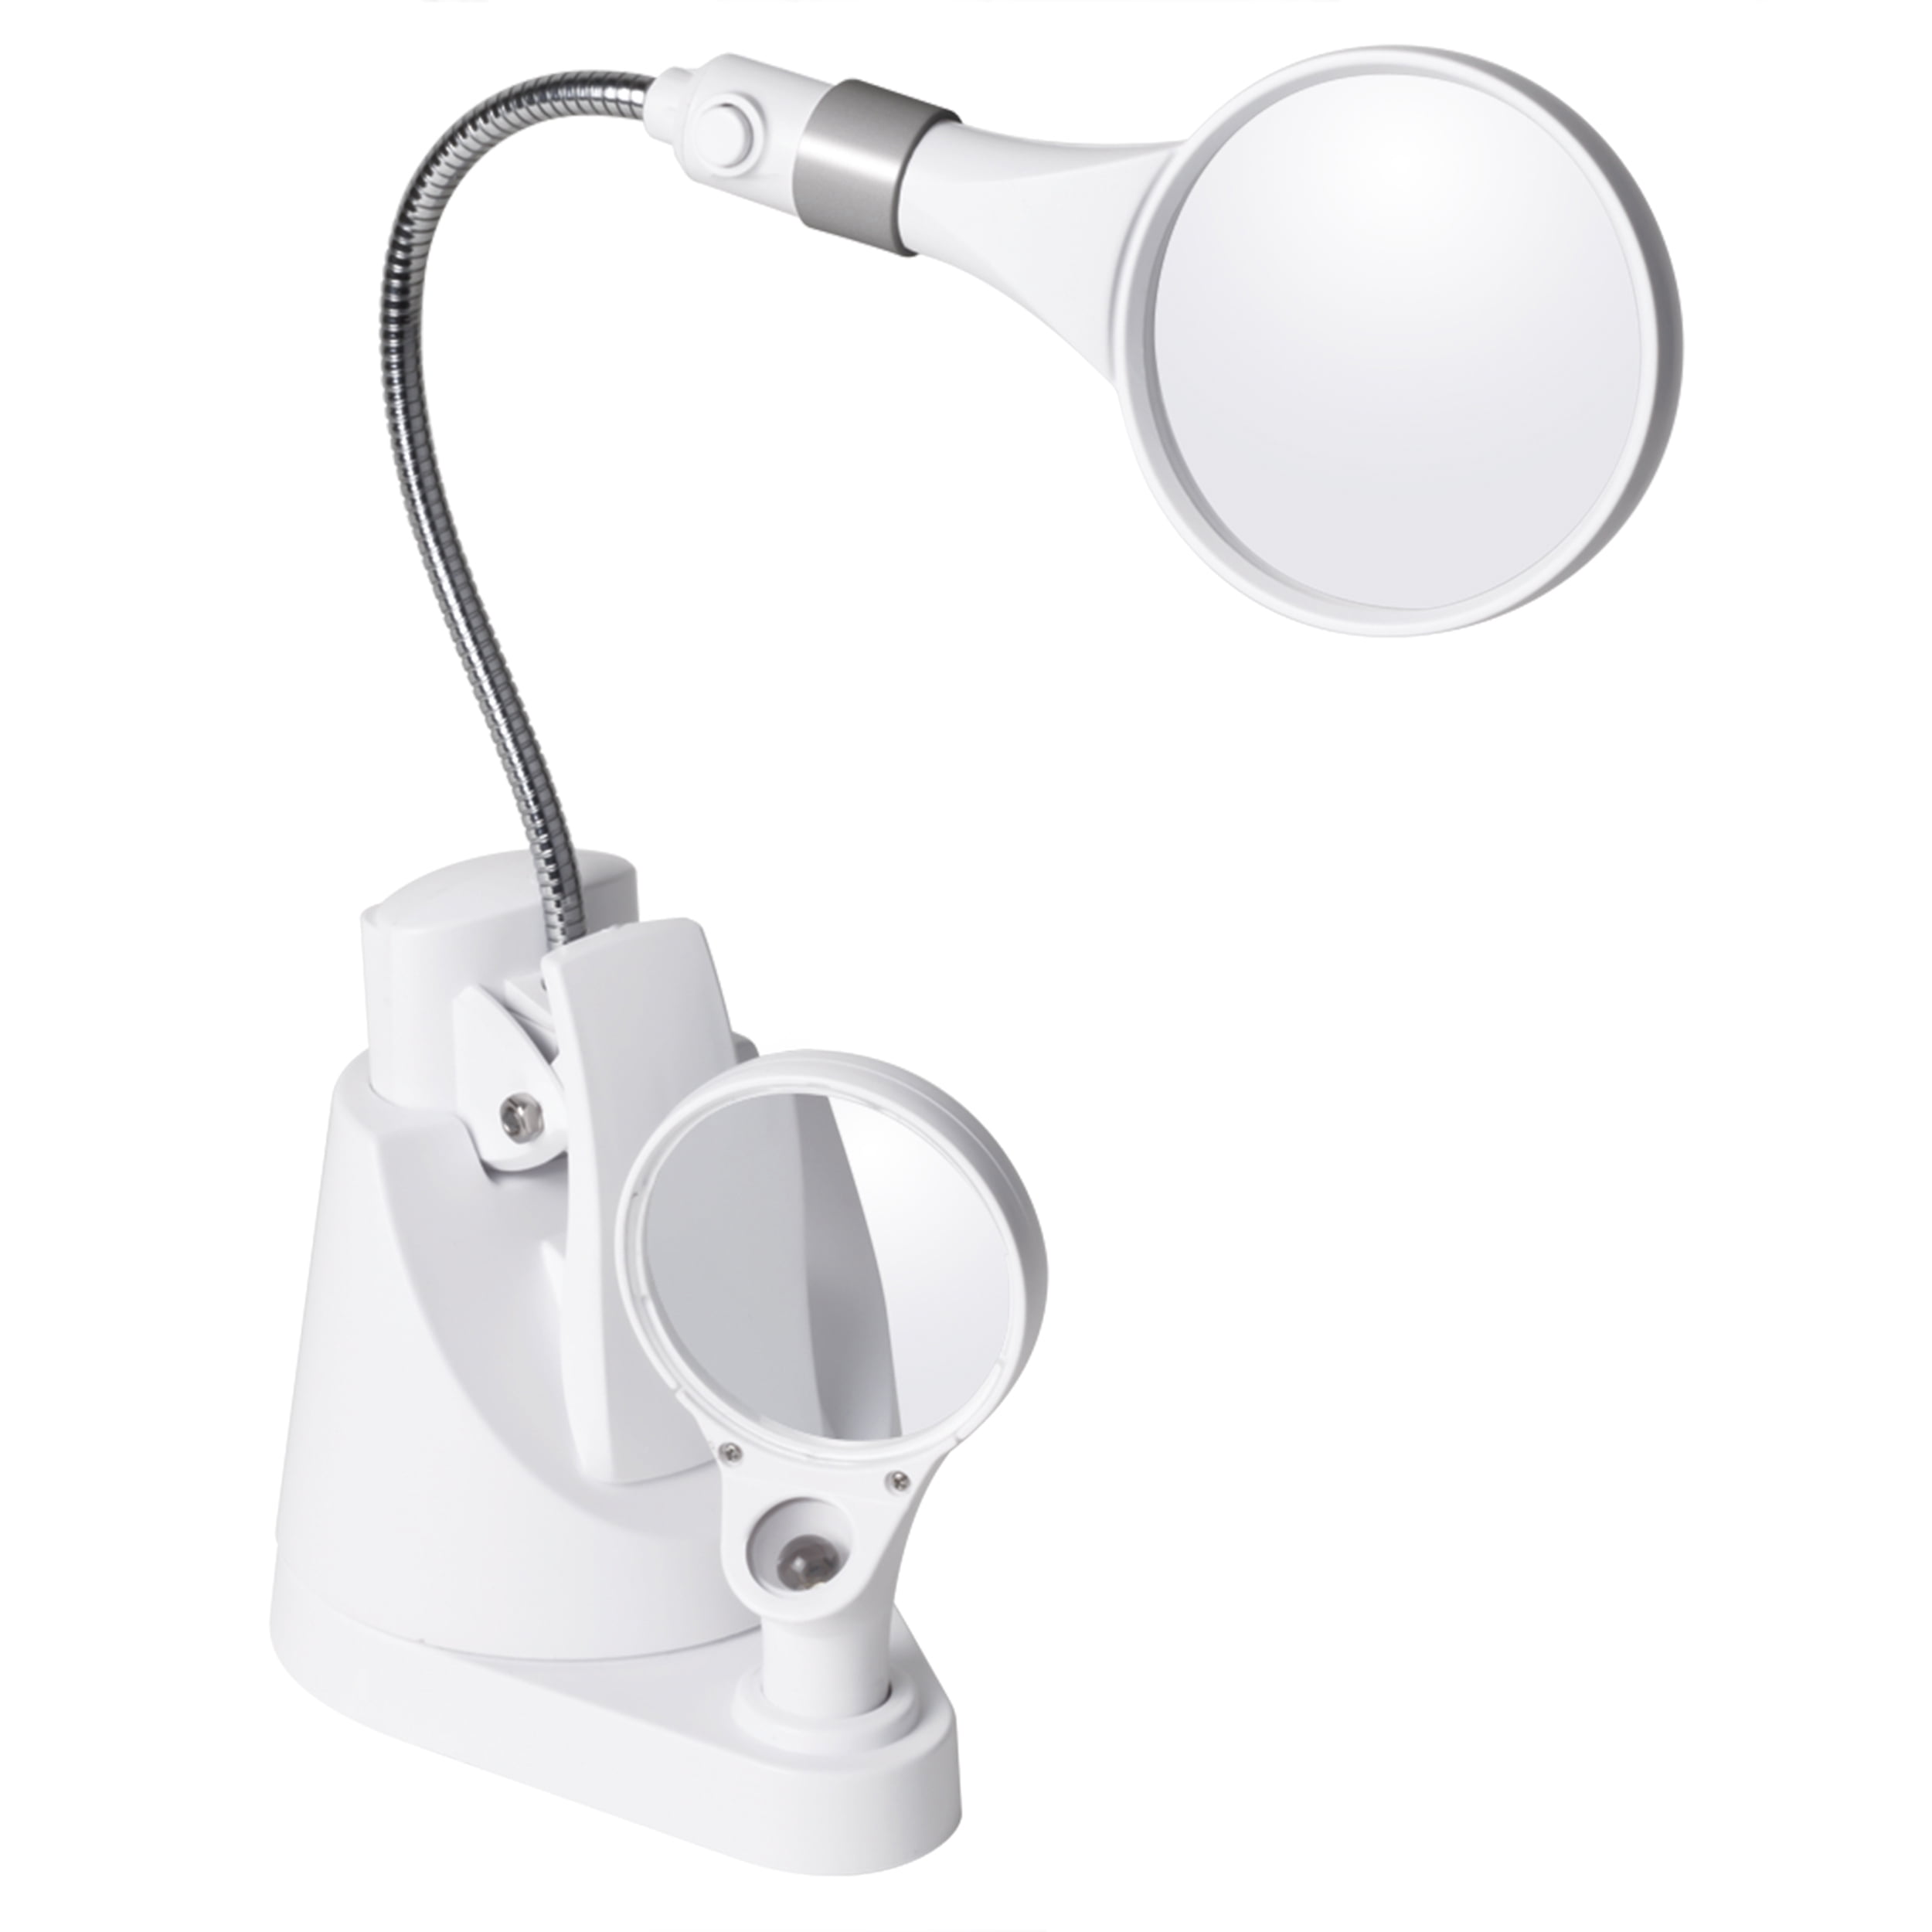 Prevention by OttLite, LED Flexible Magnifier Lamp